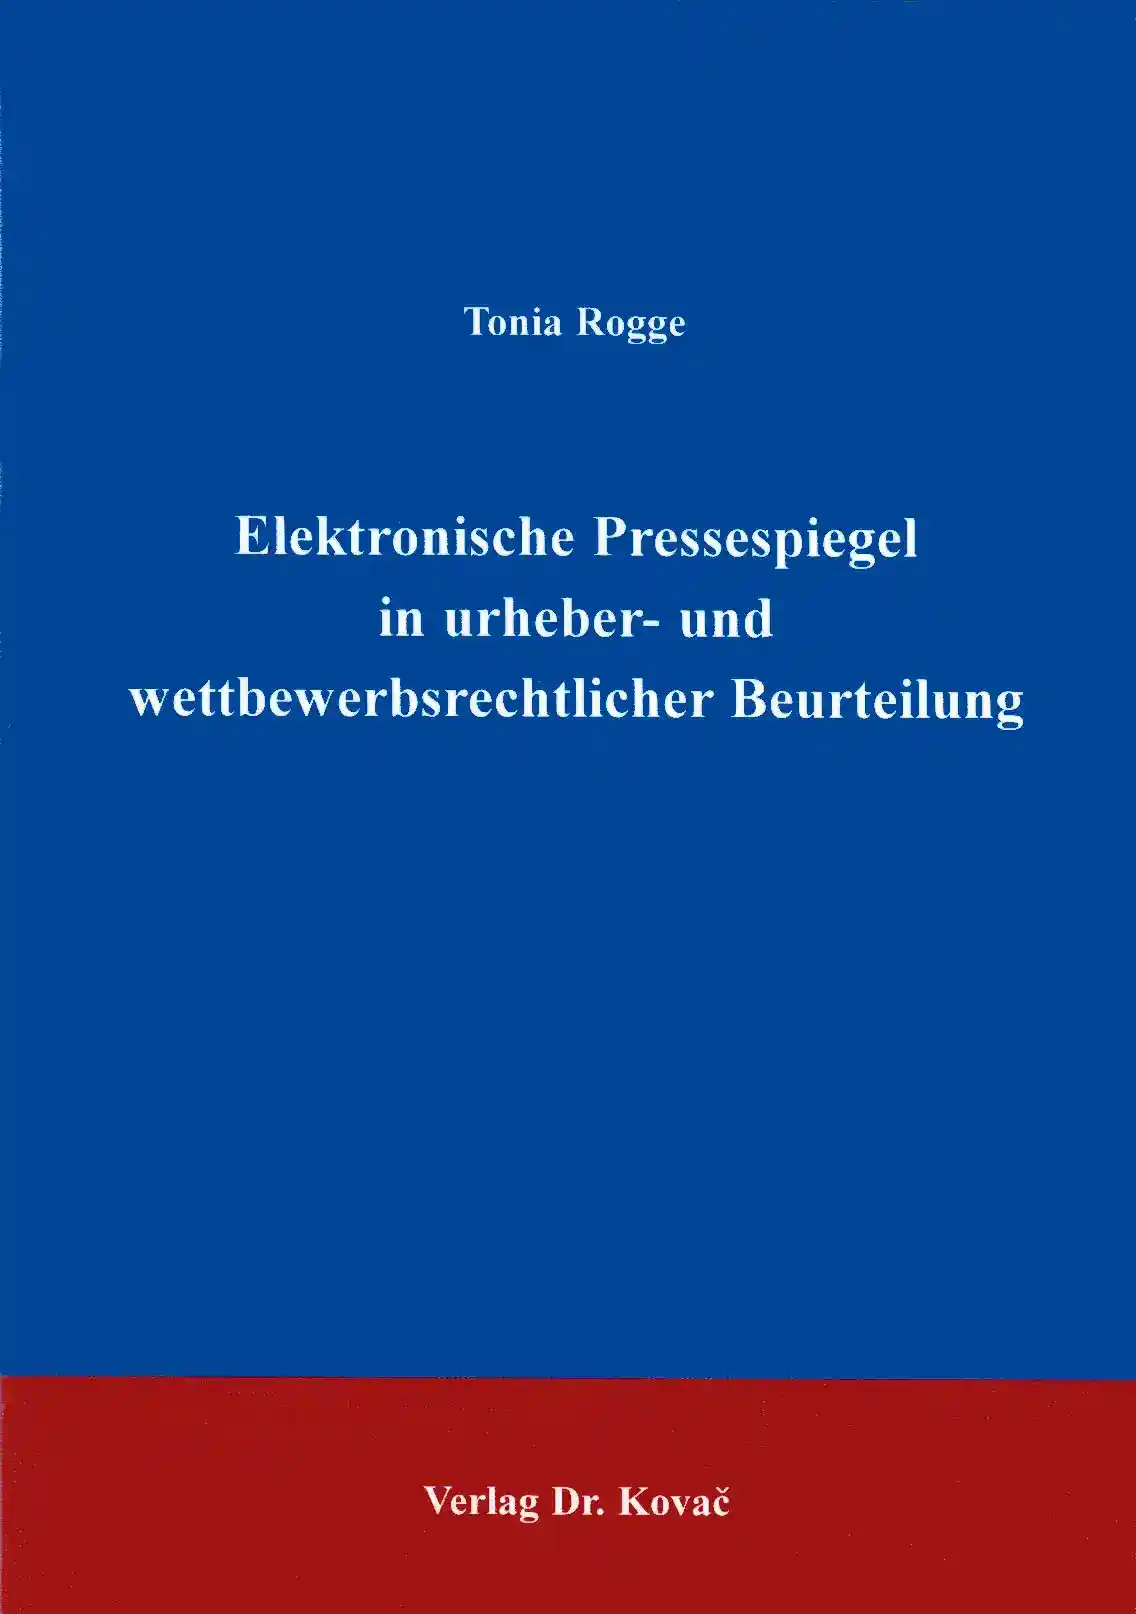 Elektronische Pressespiegel in urheber- und wettbewerbsrechtlicher Beurteilung (Dissertation)